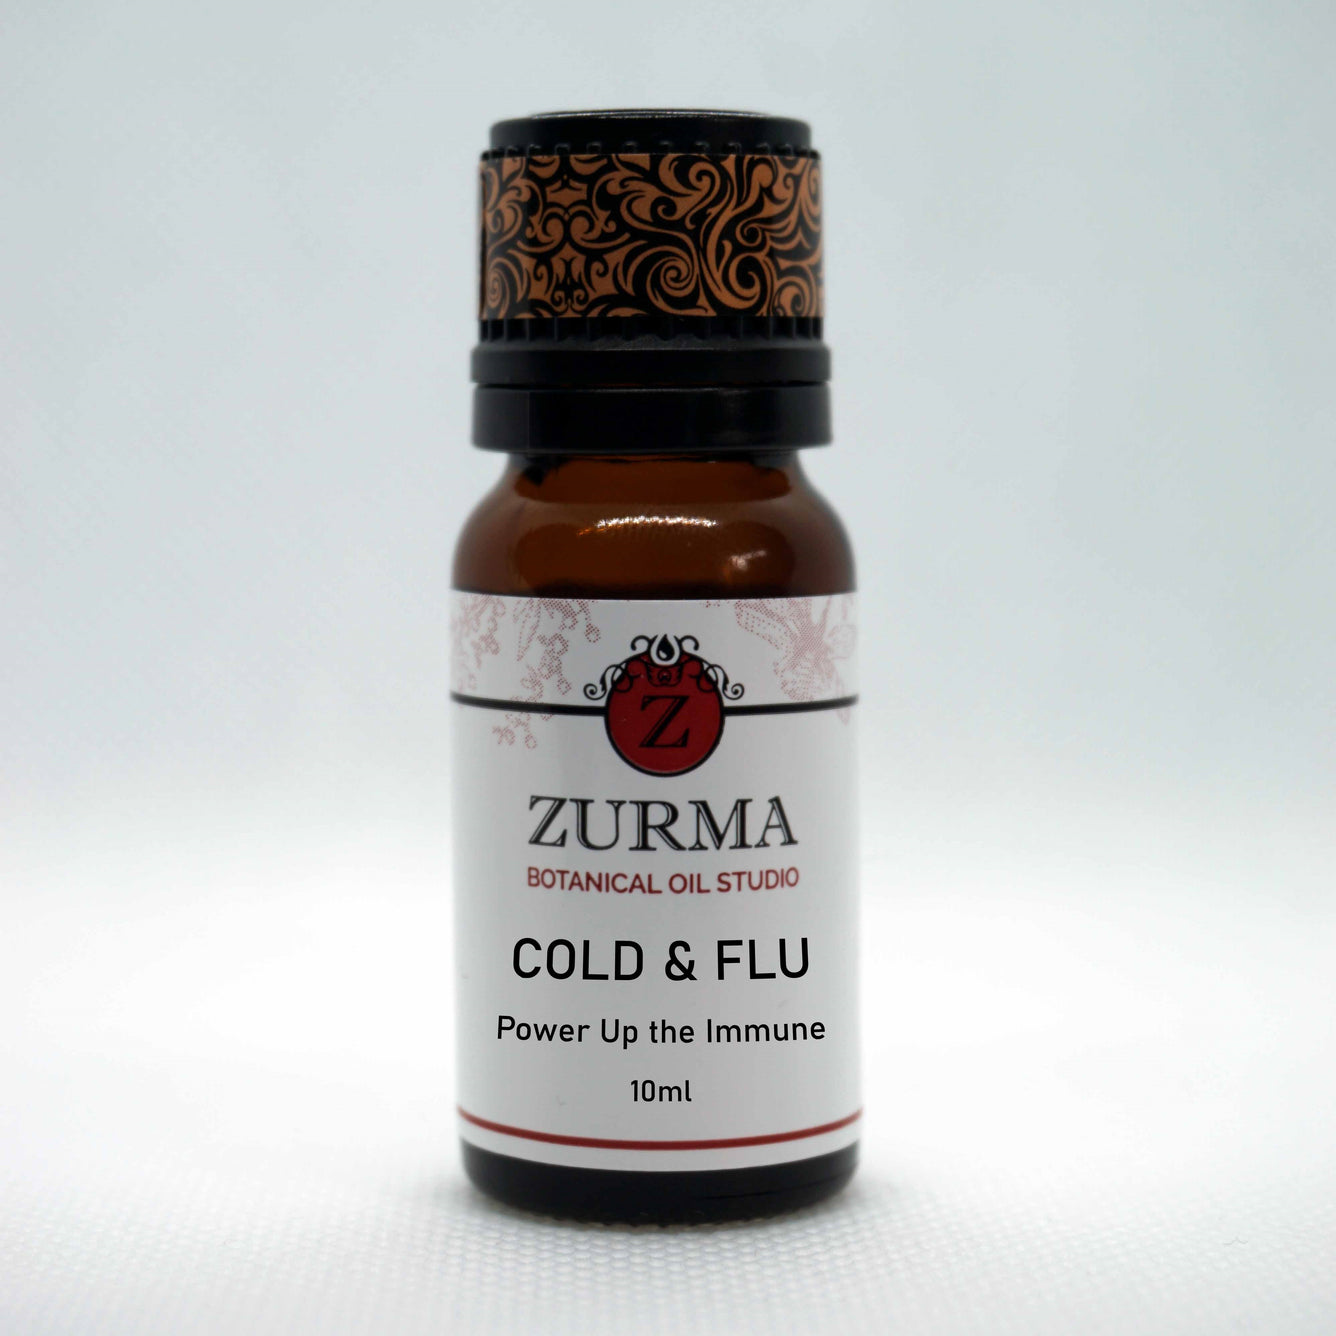 Cold & Flu Essential Oil Blend